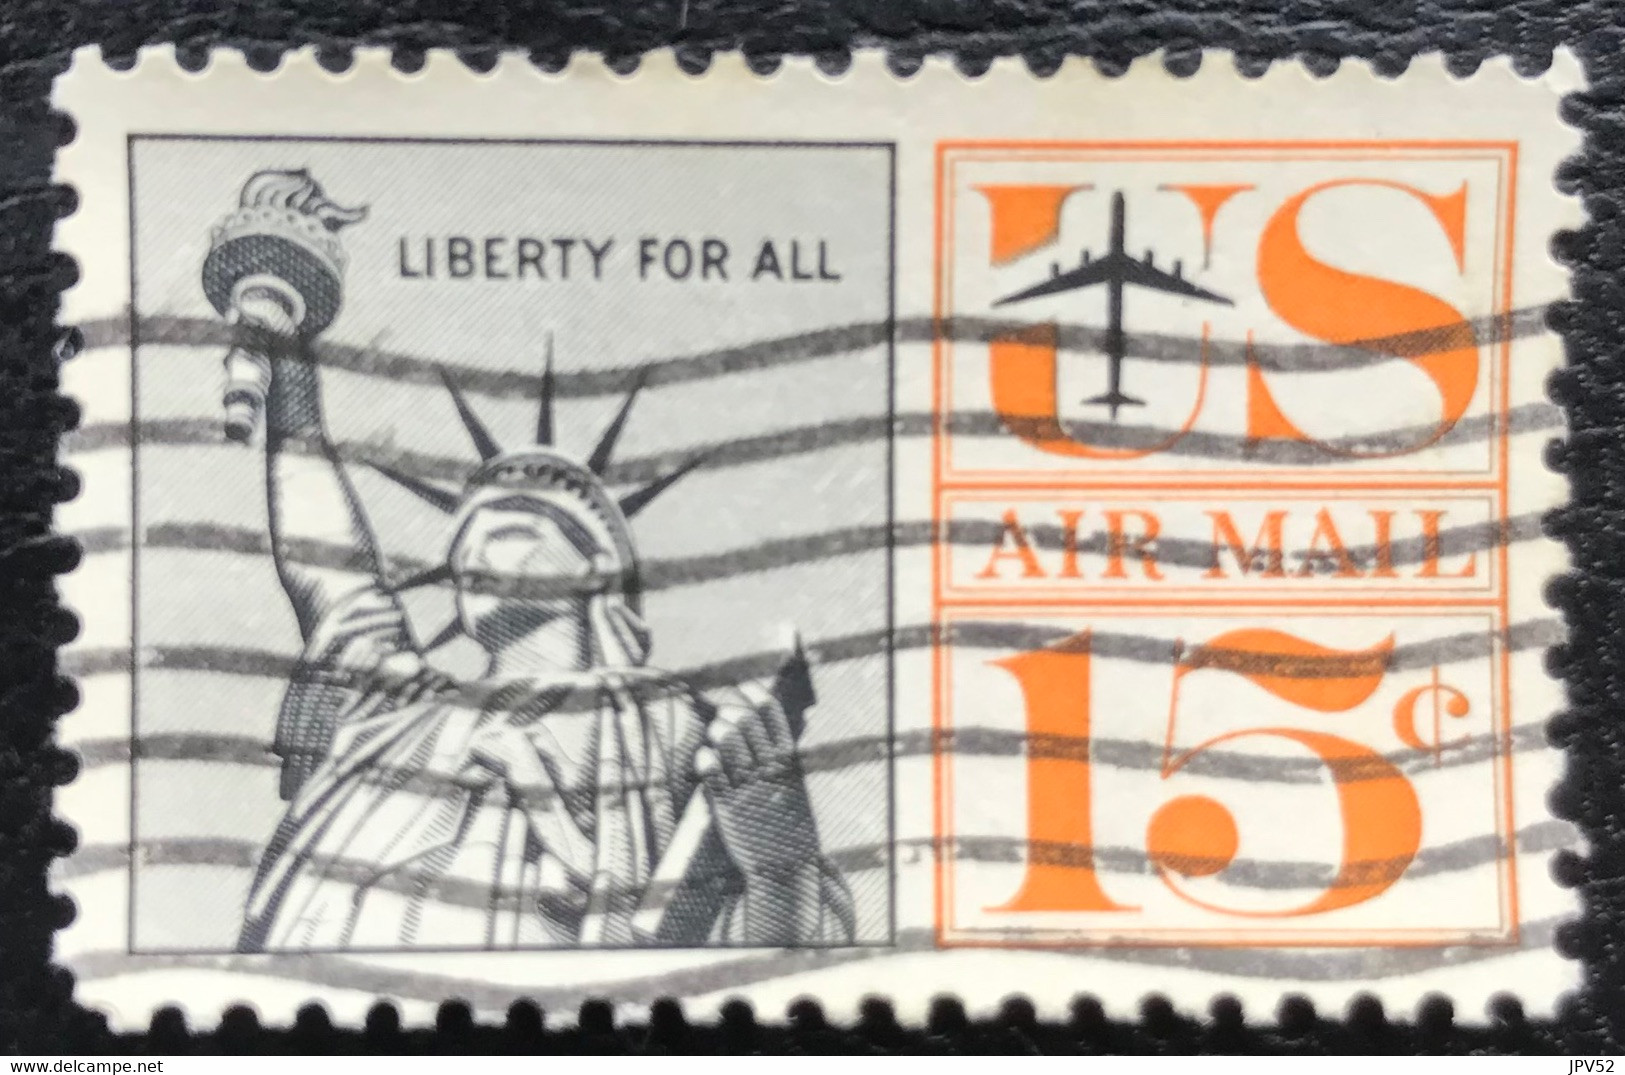 United States Of America - USA - C12/10 - (°)used - 1959 - Michel 764 - Vrijheidsbeeld - 2a. 1941-1960 Used